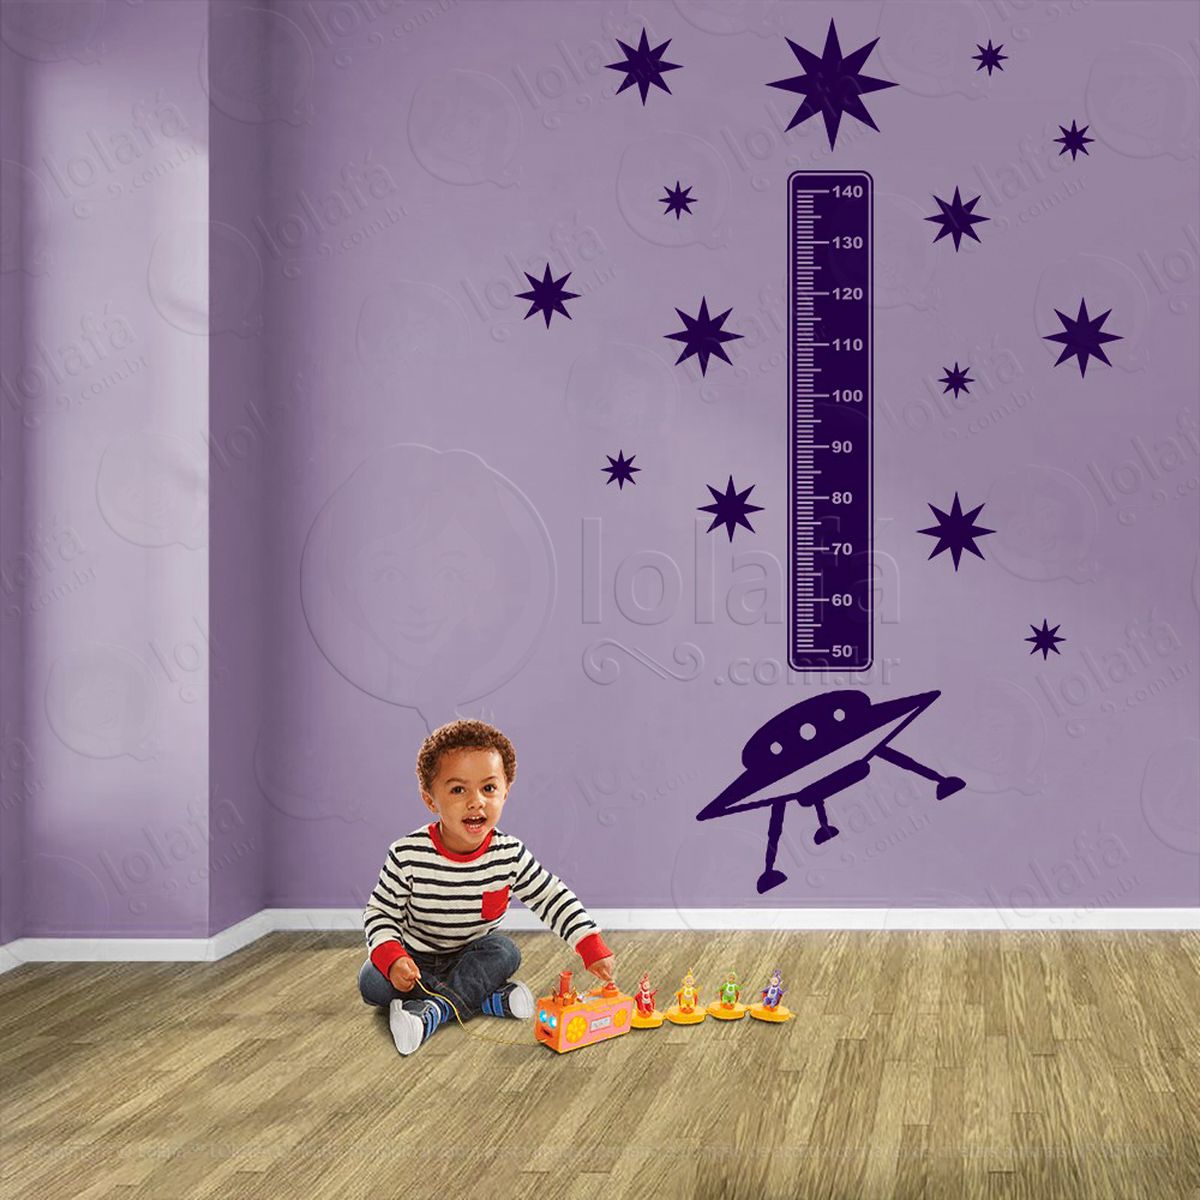 nave espacial e estrelas adesivo régua de crescimento infantil, medidor de altura para quarto, porta e parede - mod:1274